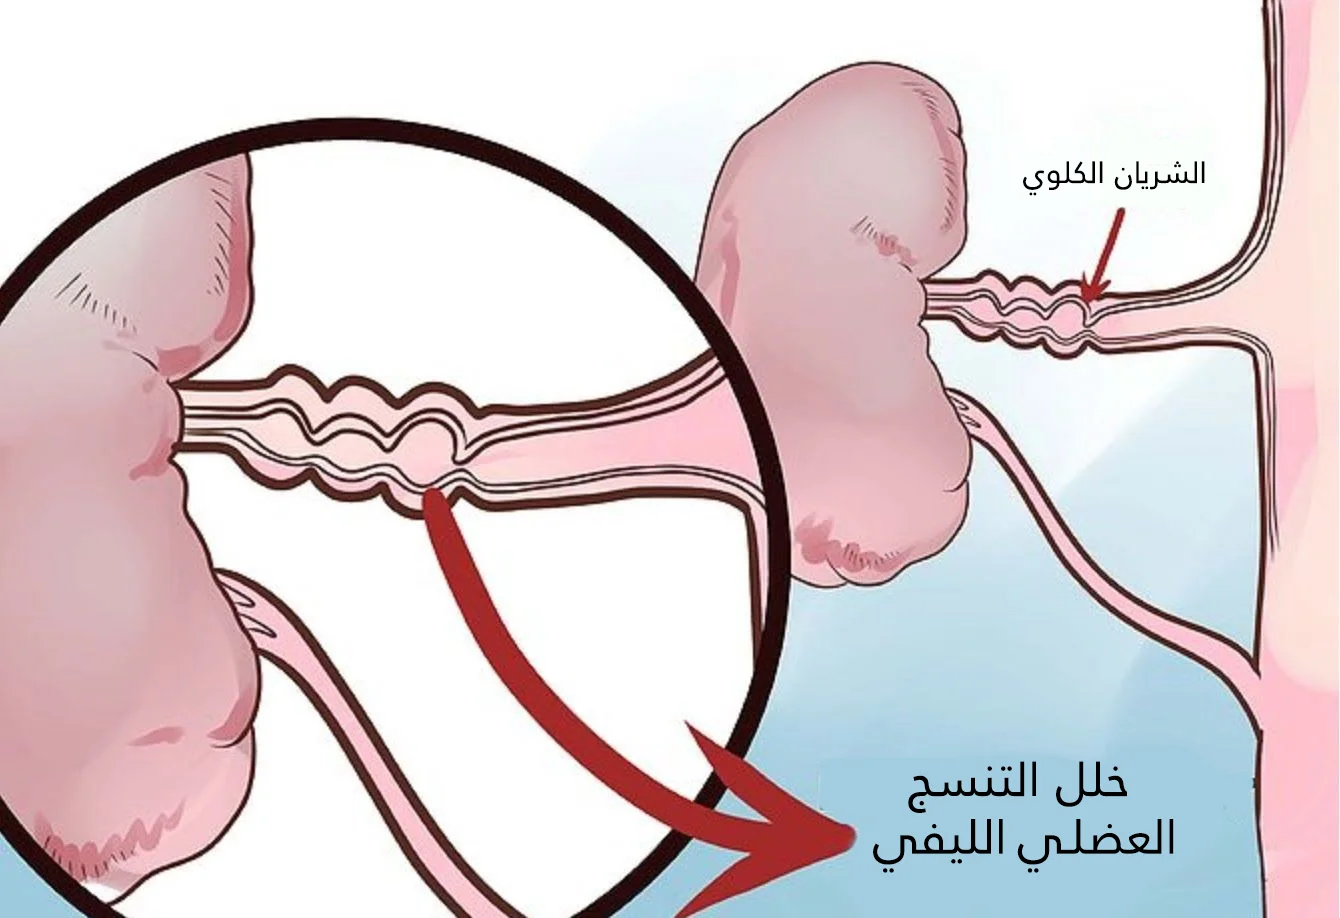 Fibromüsküler displazi arteriyel lümen bozulmasına ve renal arter darlığına yol açar